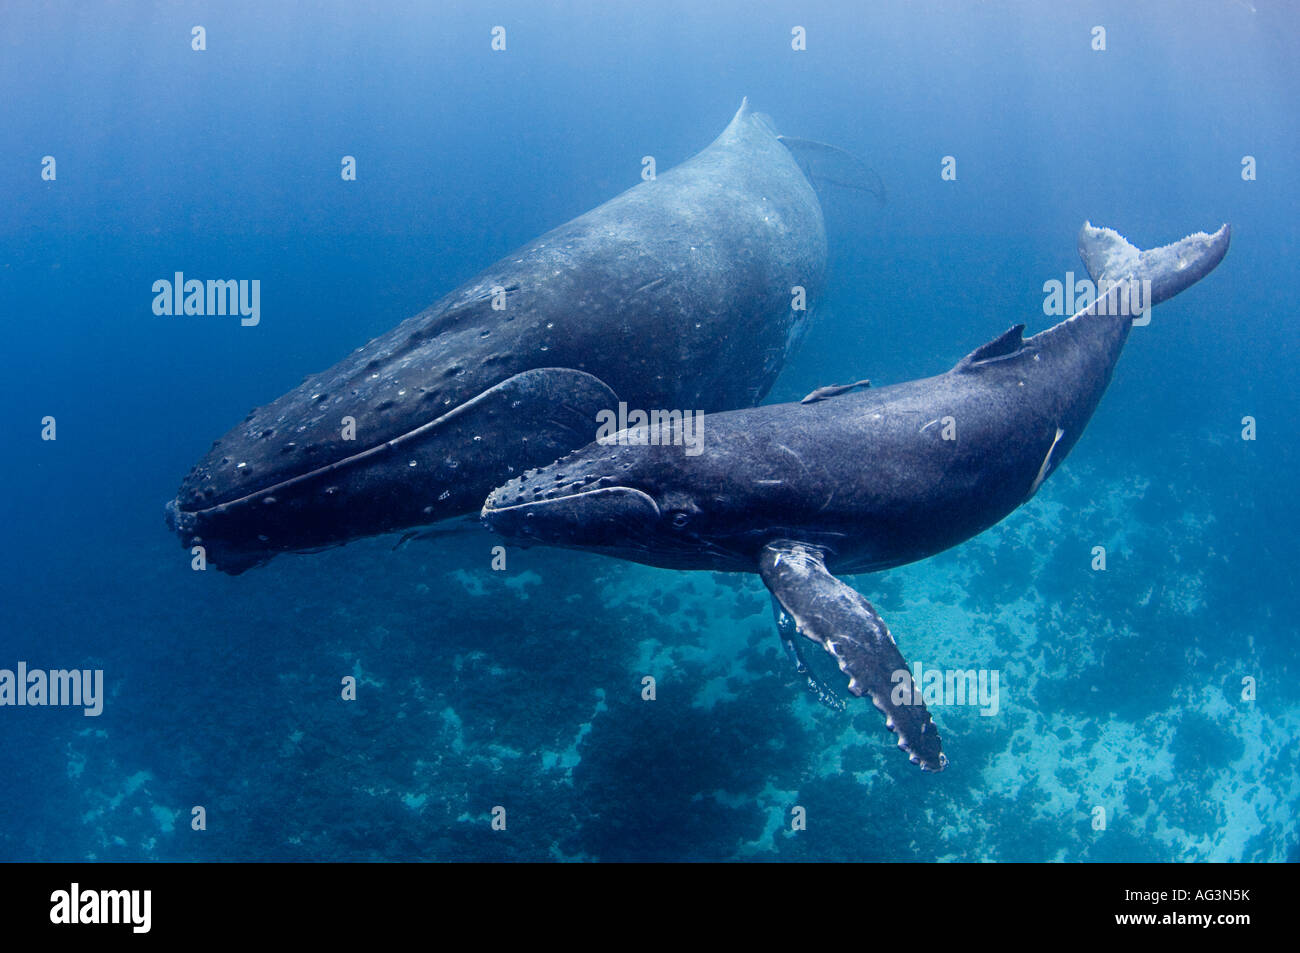 Les baleines à bosse (Megaptera novaeangliae) à Vava'u, Royaume de Tonga, un lieu de reproduction et de mise bas pour les baleines dans le Pacifique. Banque D'Images